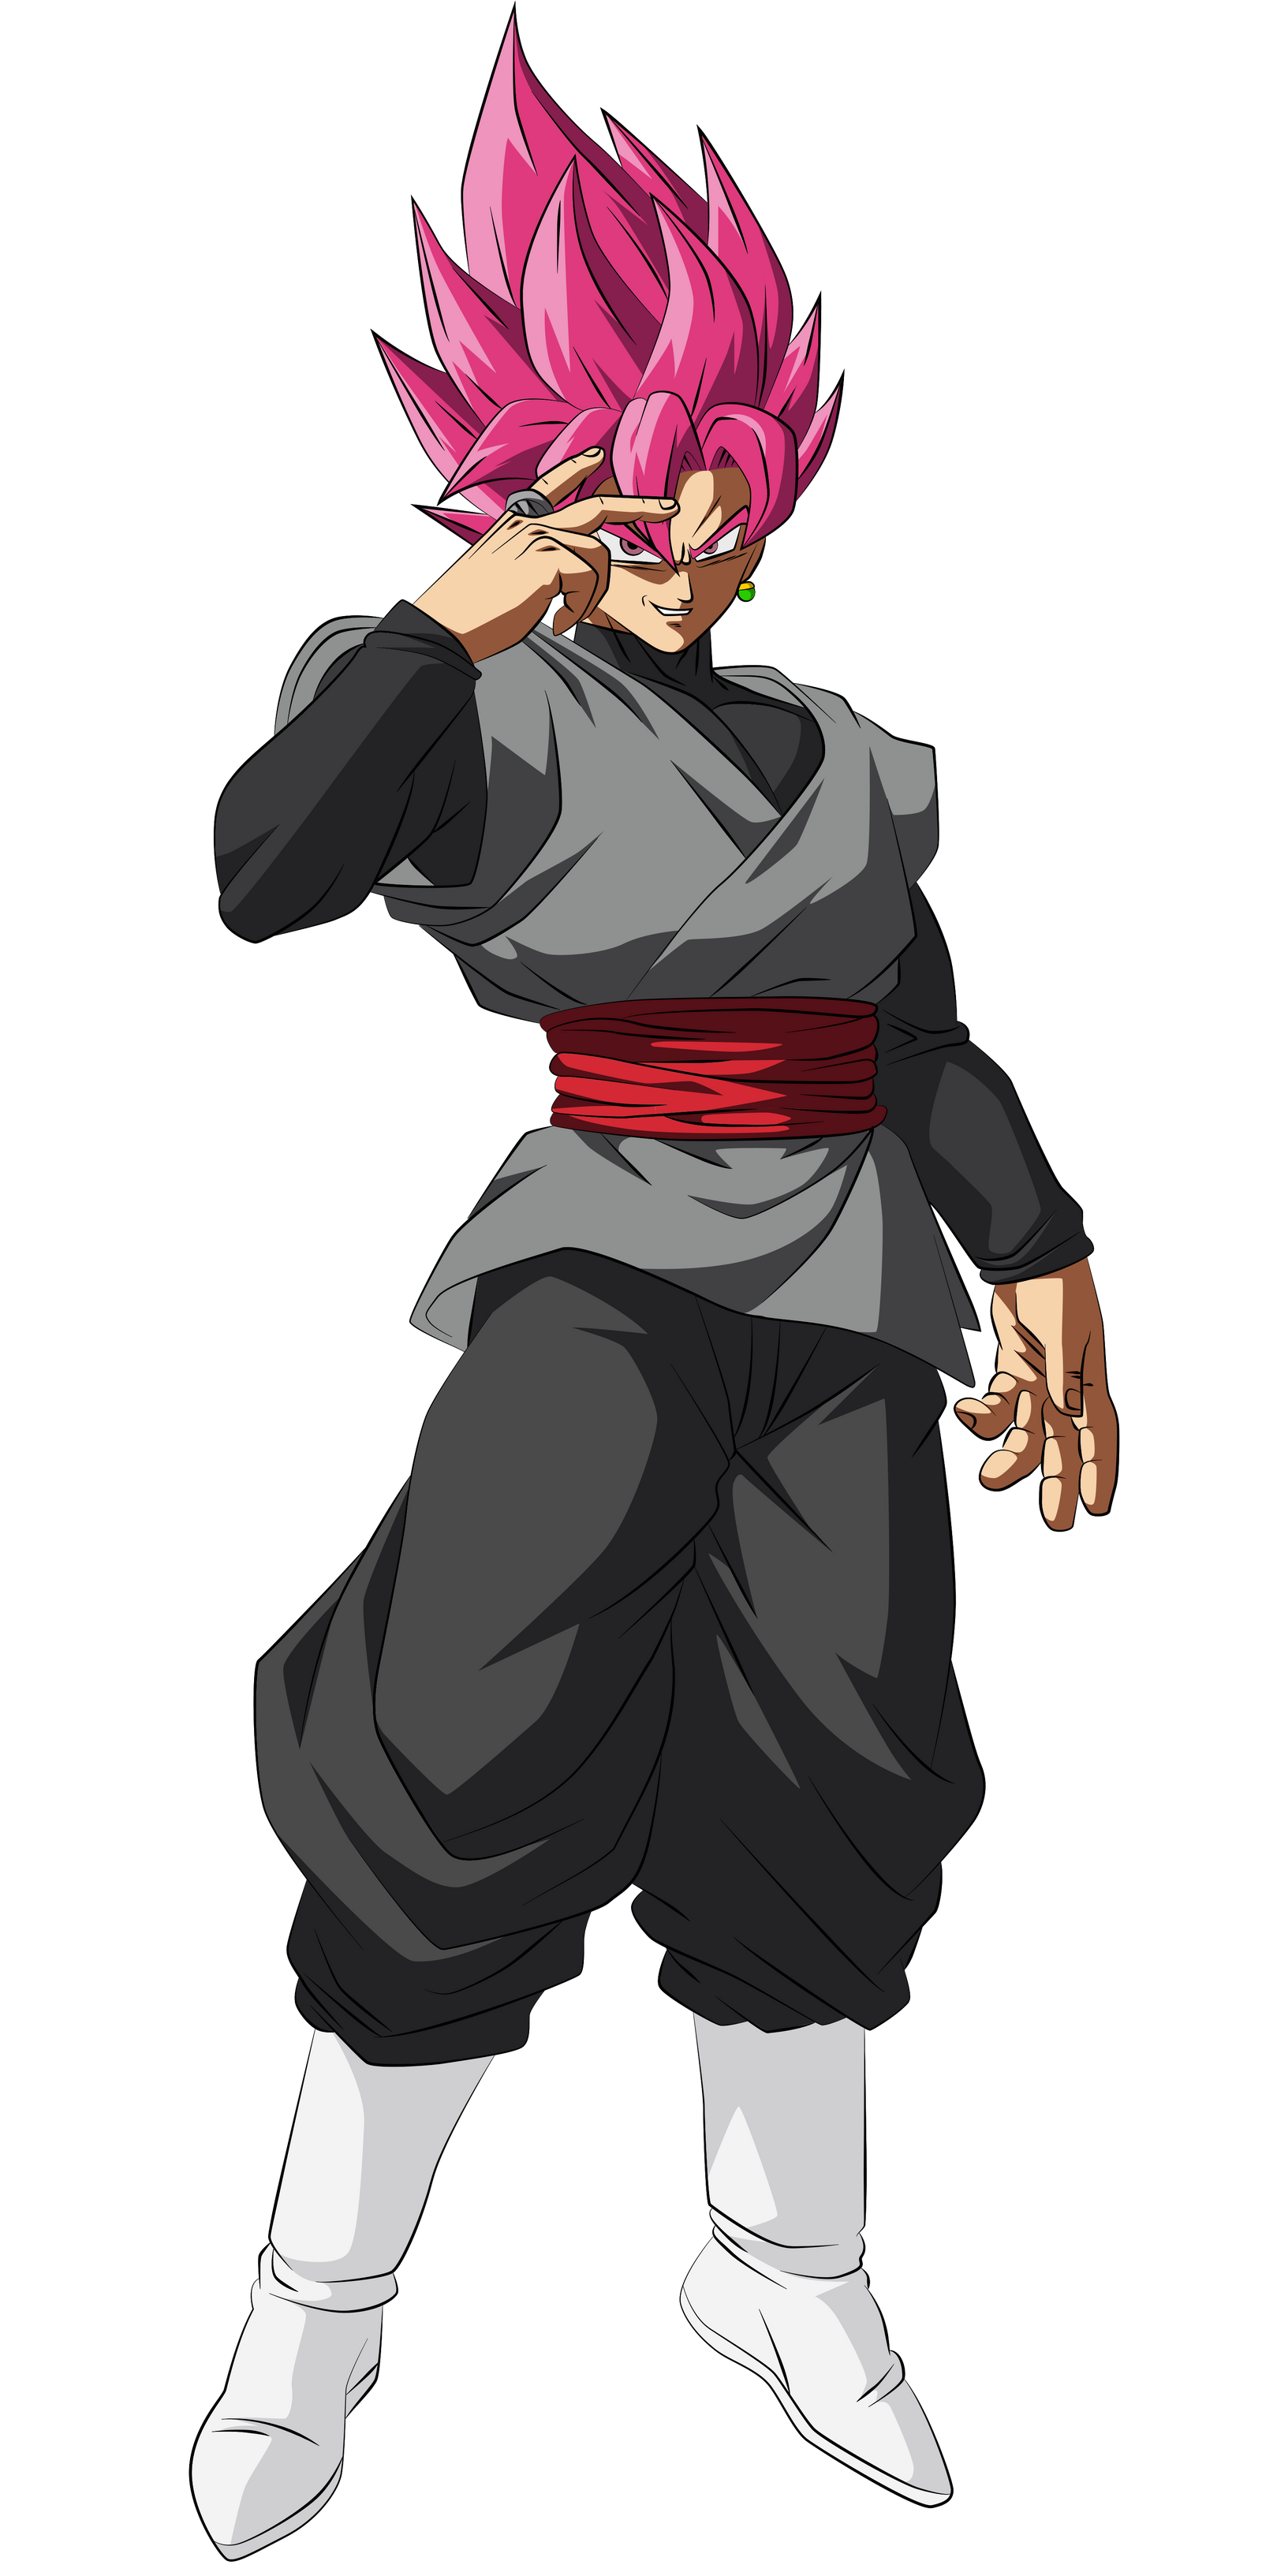 Goku Black Super Saiyan Rose Evolution Render By Mohasetif On Deviantart